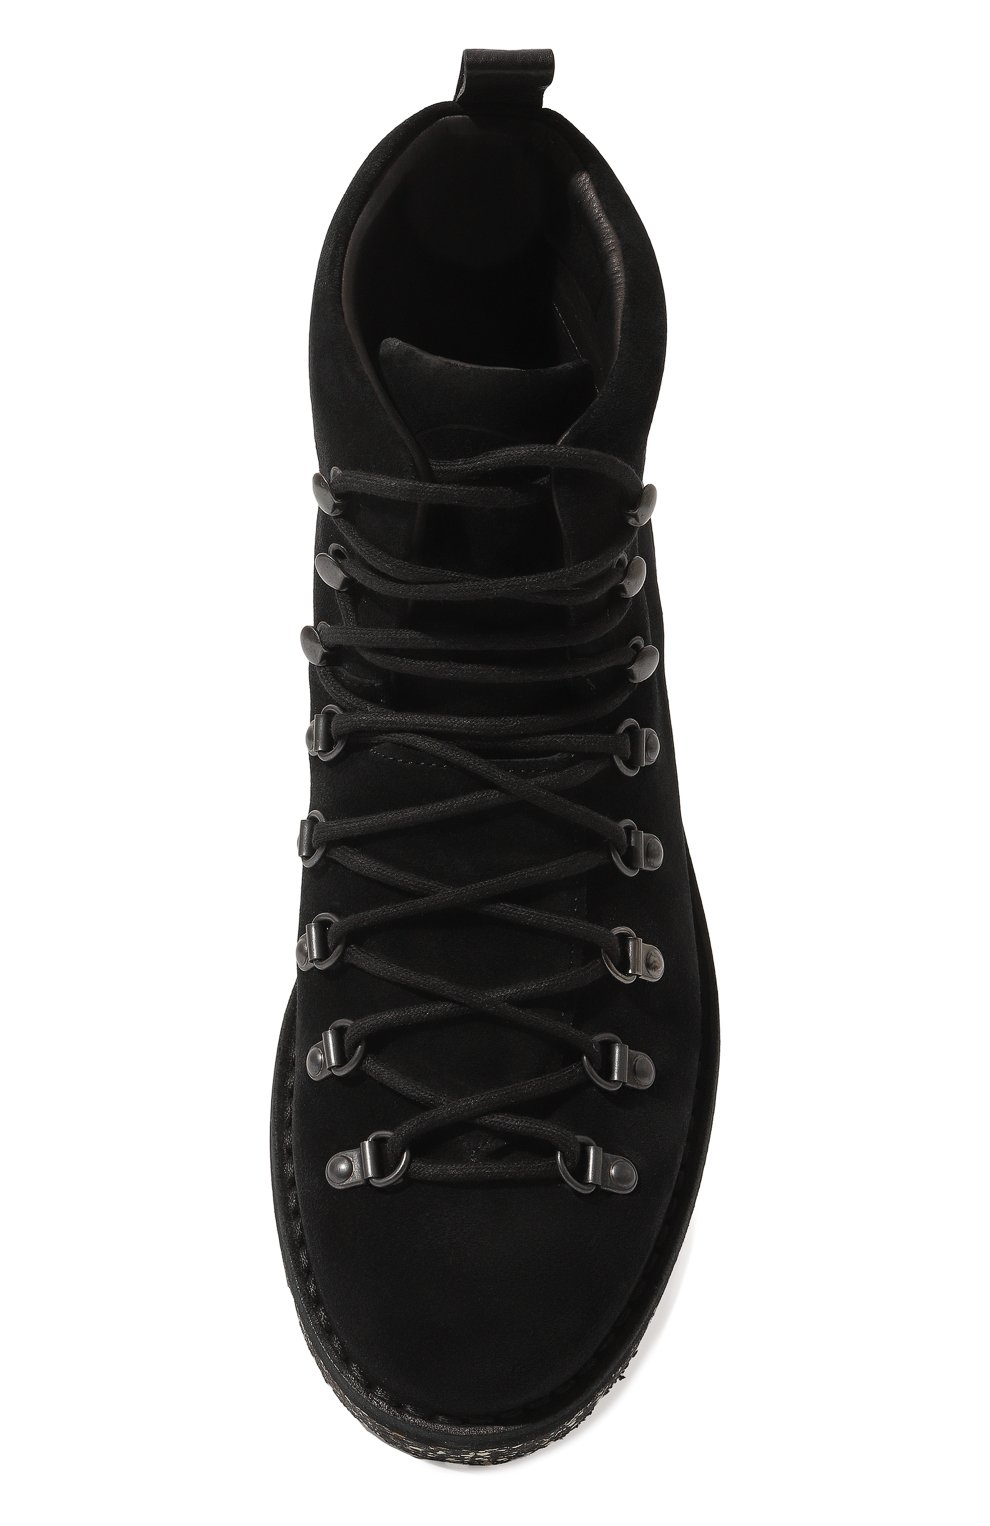 Мужские черные замшевые ботинки FRACAP купить в интернет-магазине ЦУМ, арт.M120 ALT0/SUEDE MIMETIC/LISTIN0